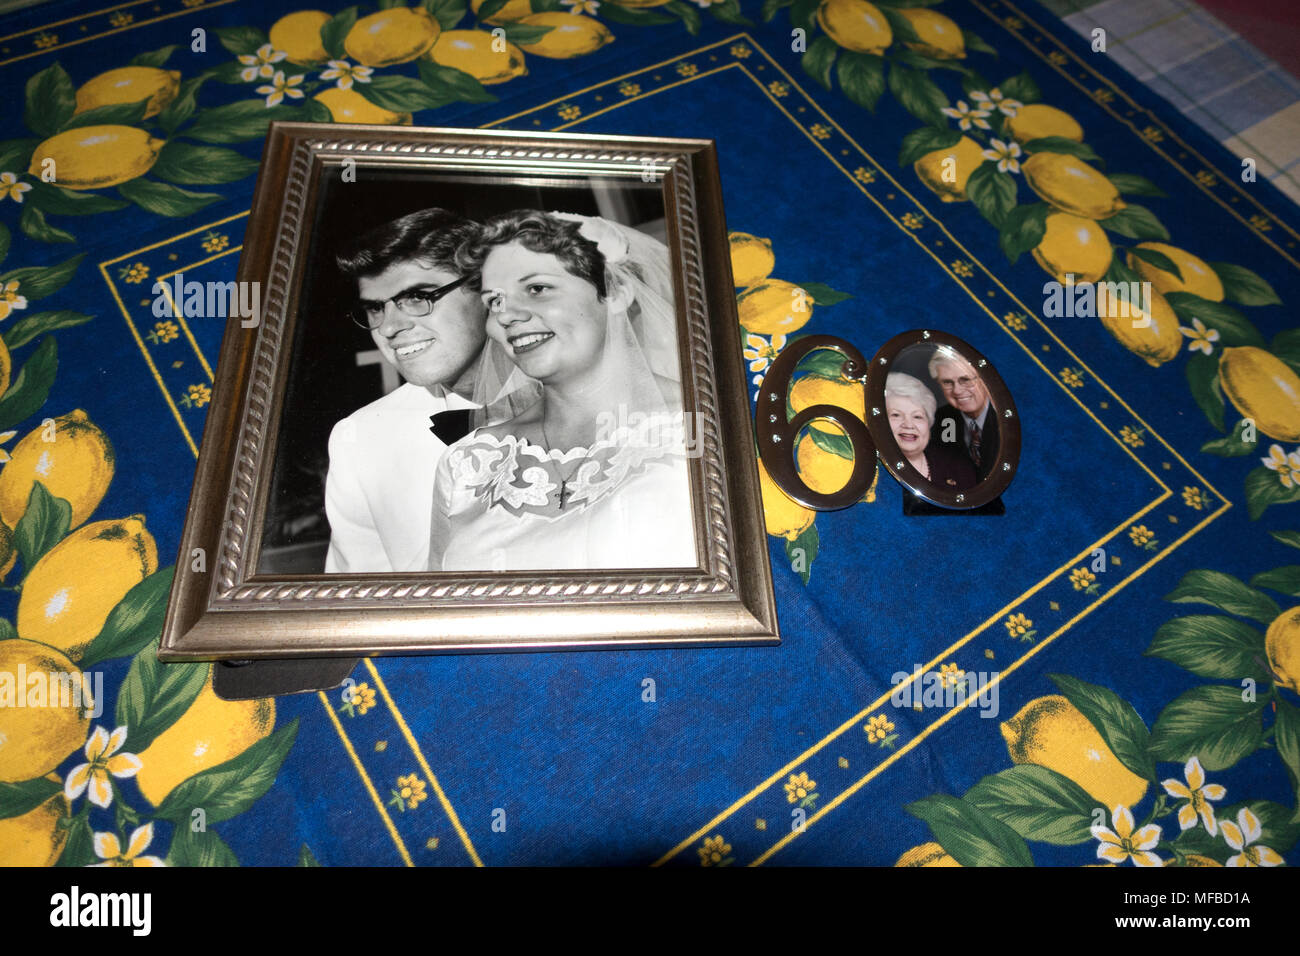 Photo de mariage à côté d'une photographie récente célébrant 60 années de mariage. Downers Grove Illinois IL USA Banque D'Images